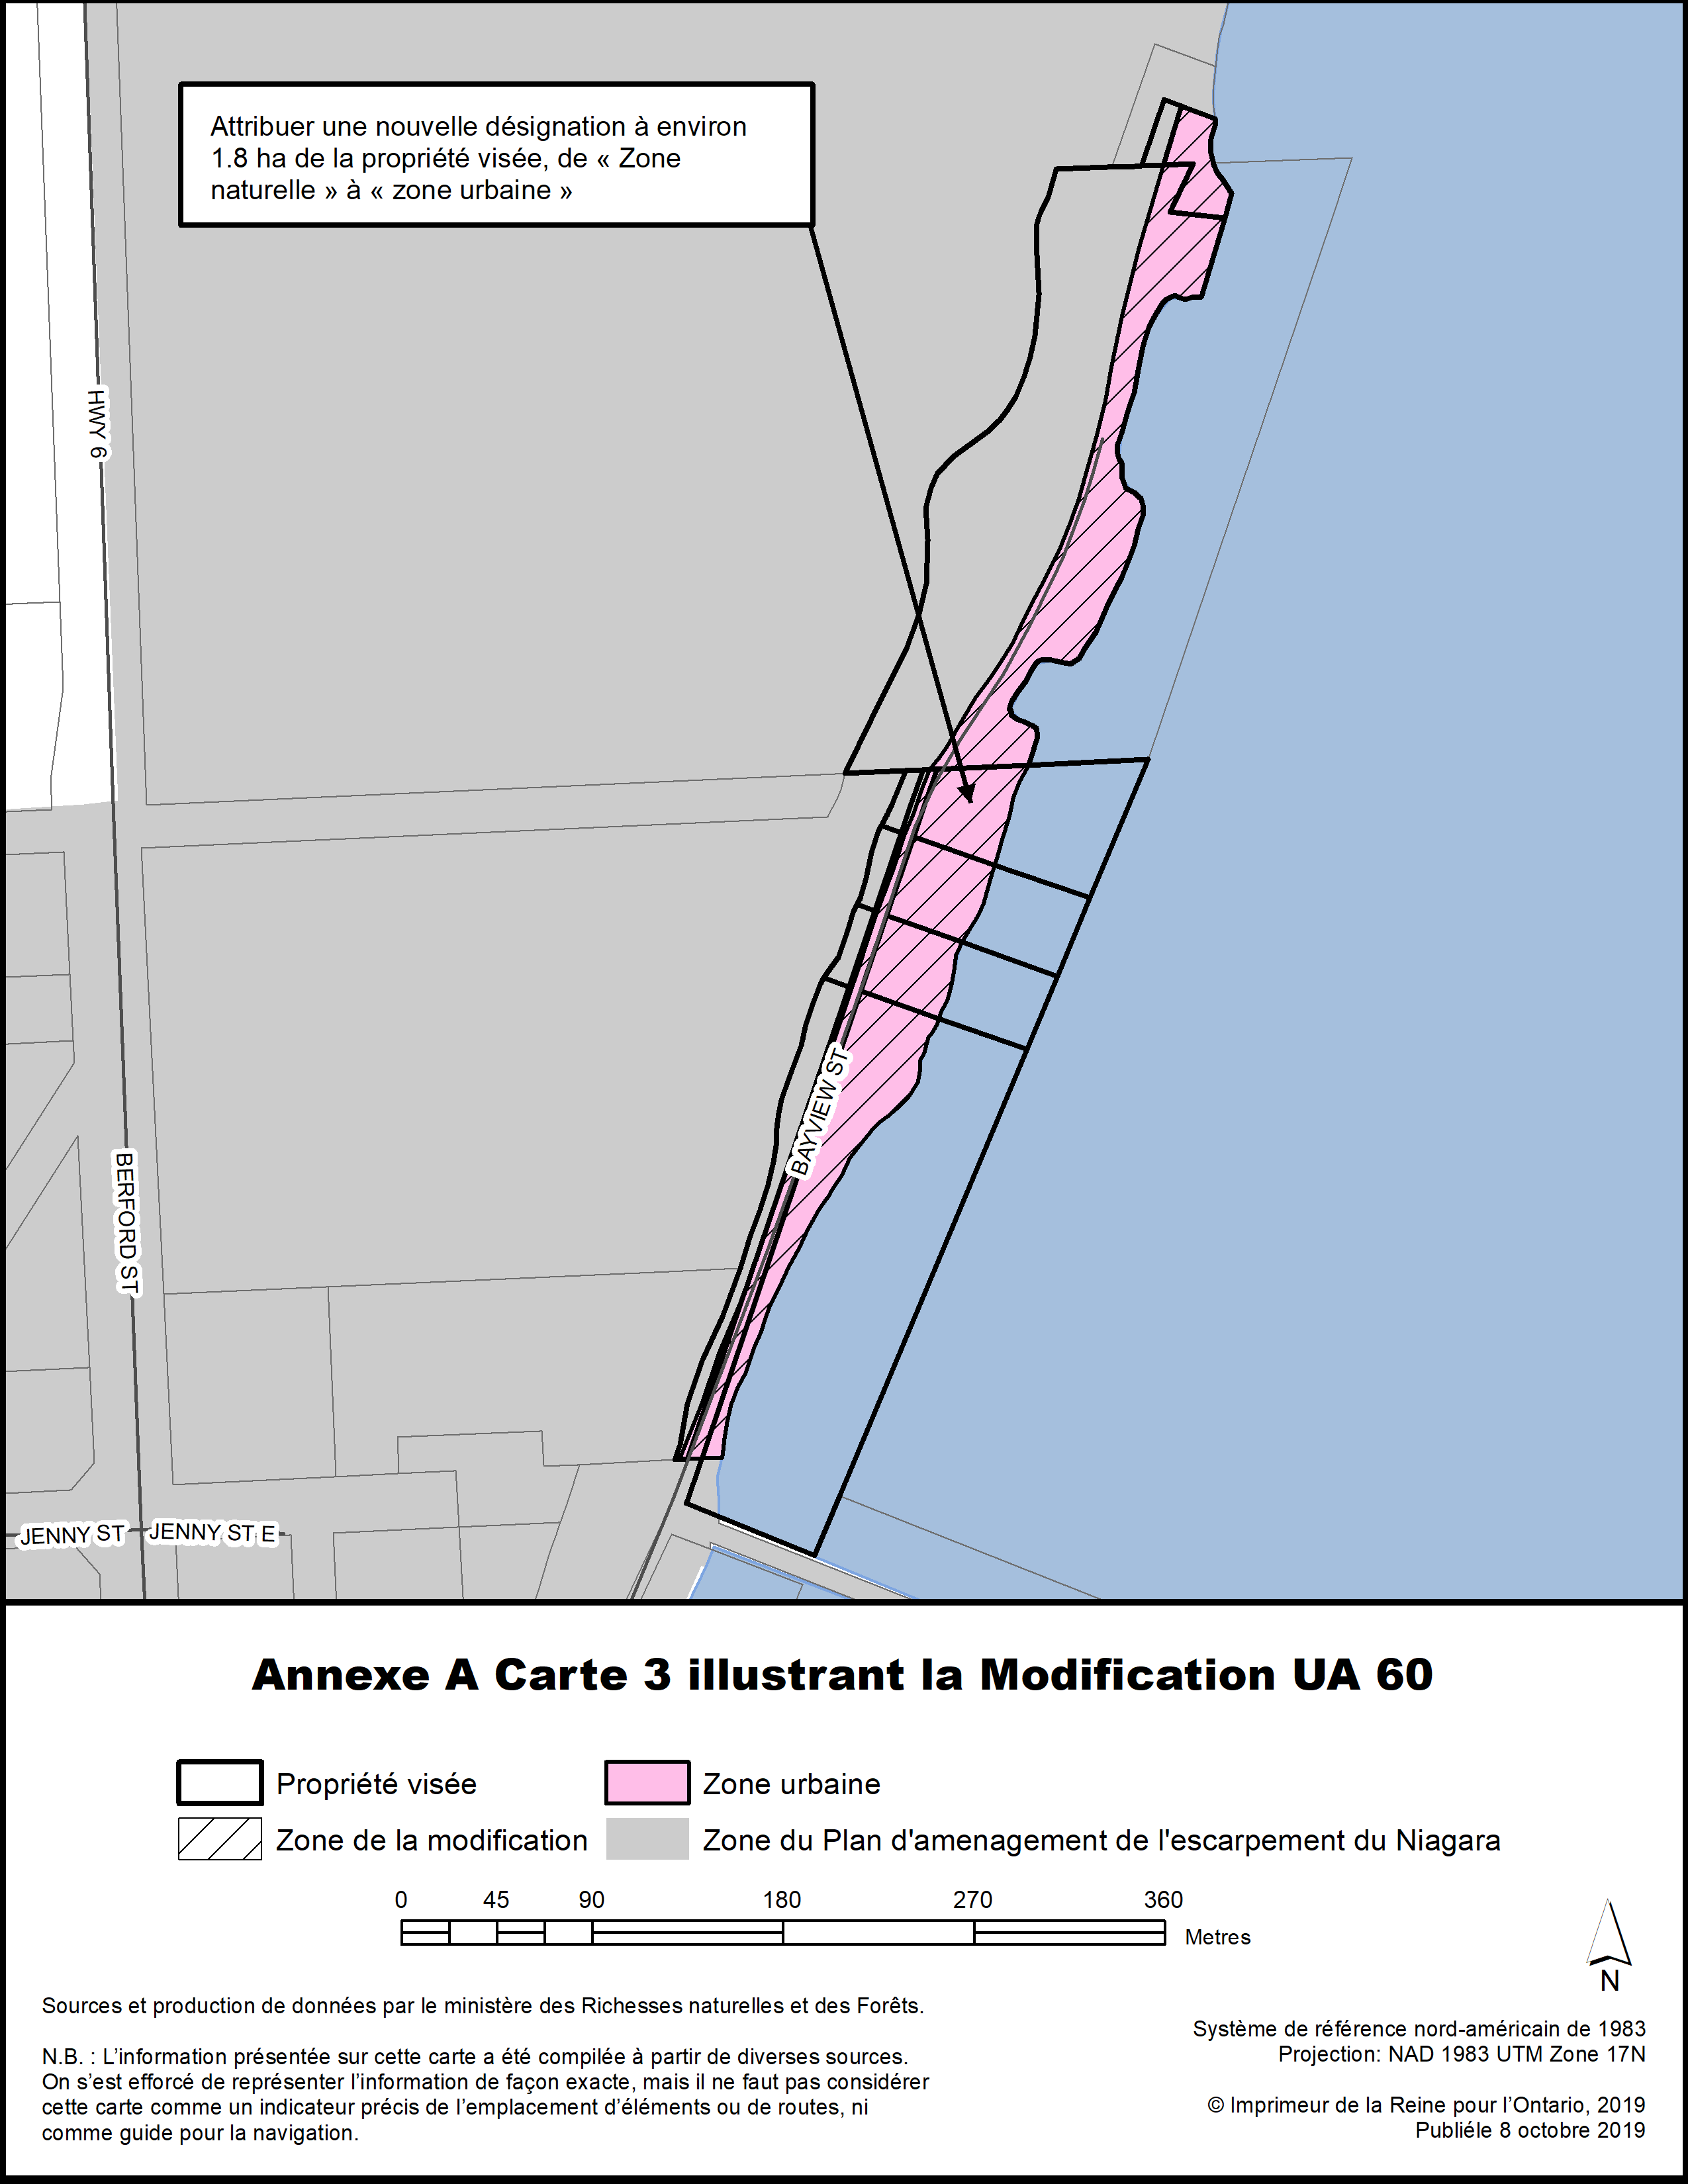 Annexe A Carte 3 illustrant la Modification UA 60.
Attribuer une nouvelle désignation à environ 1.8 ha de la propriété visée, de « Zone naturelle » à « zone urbaine ».